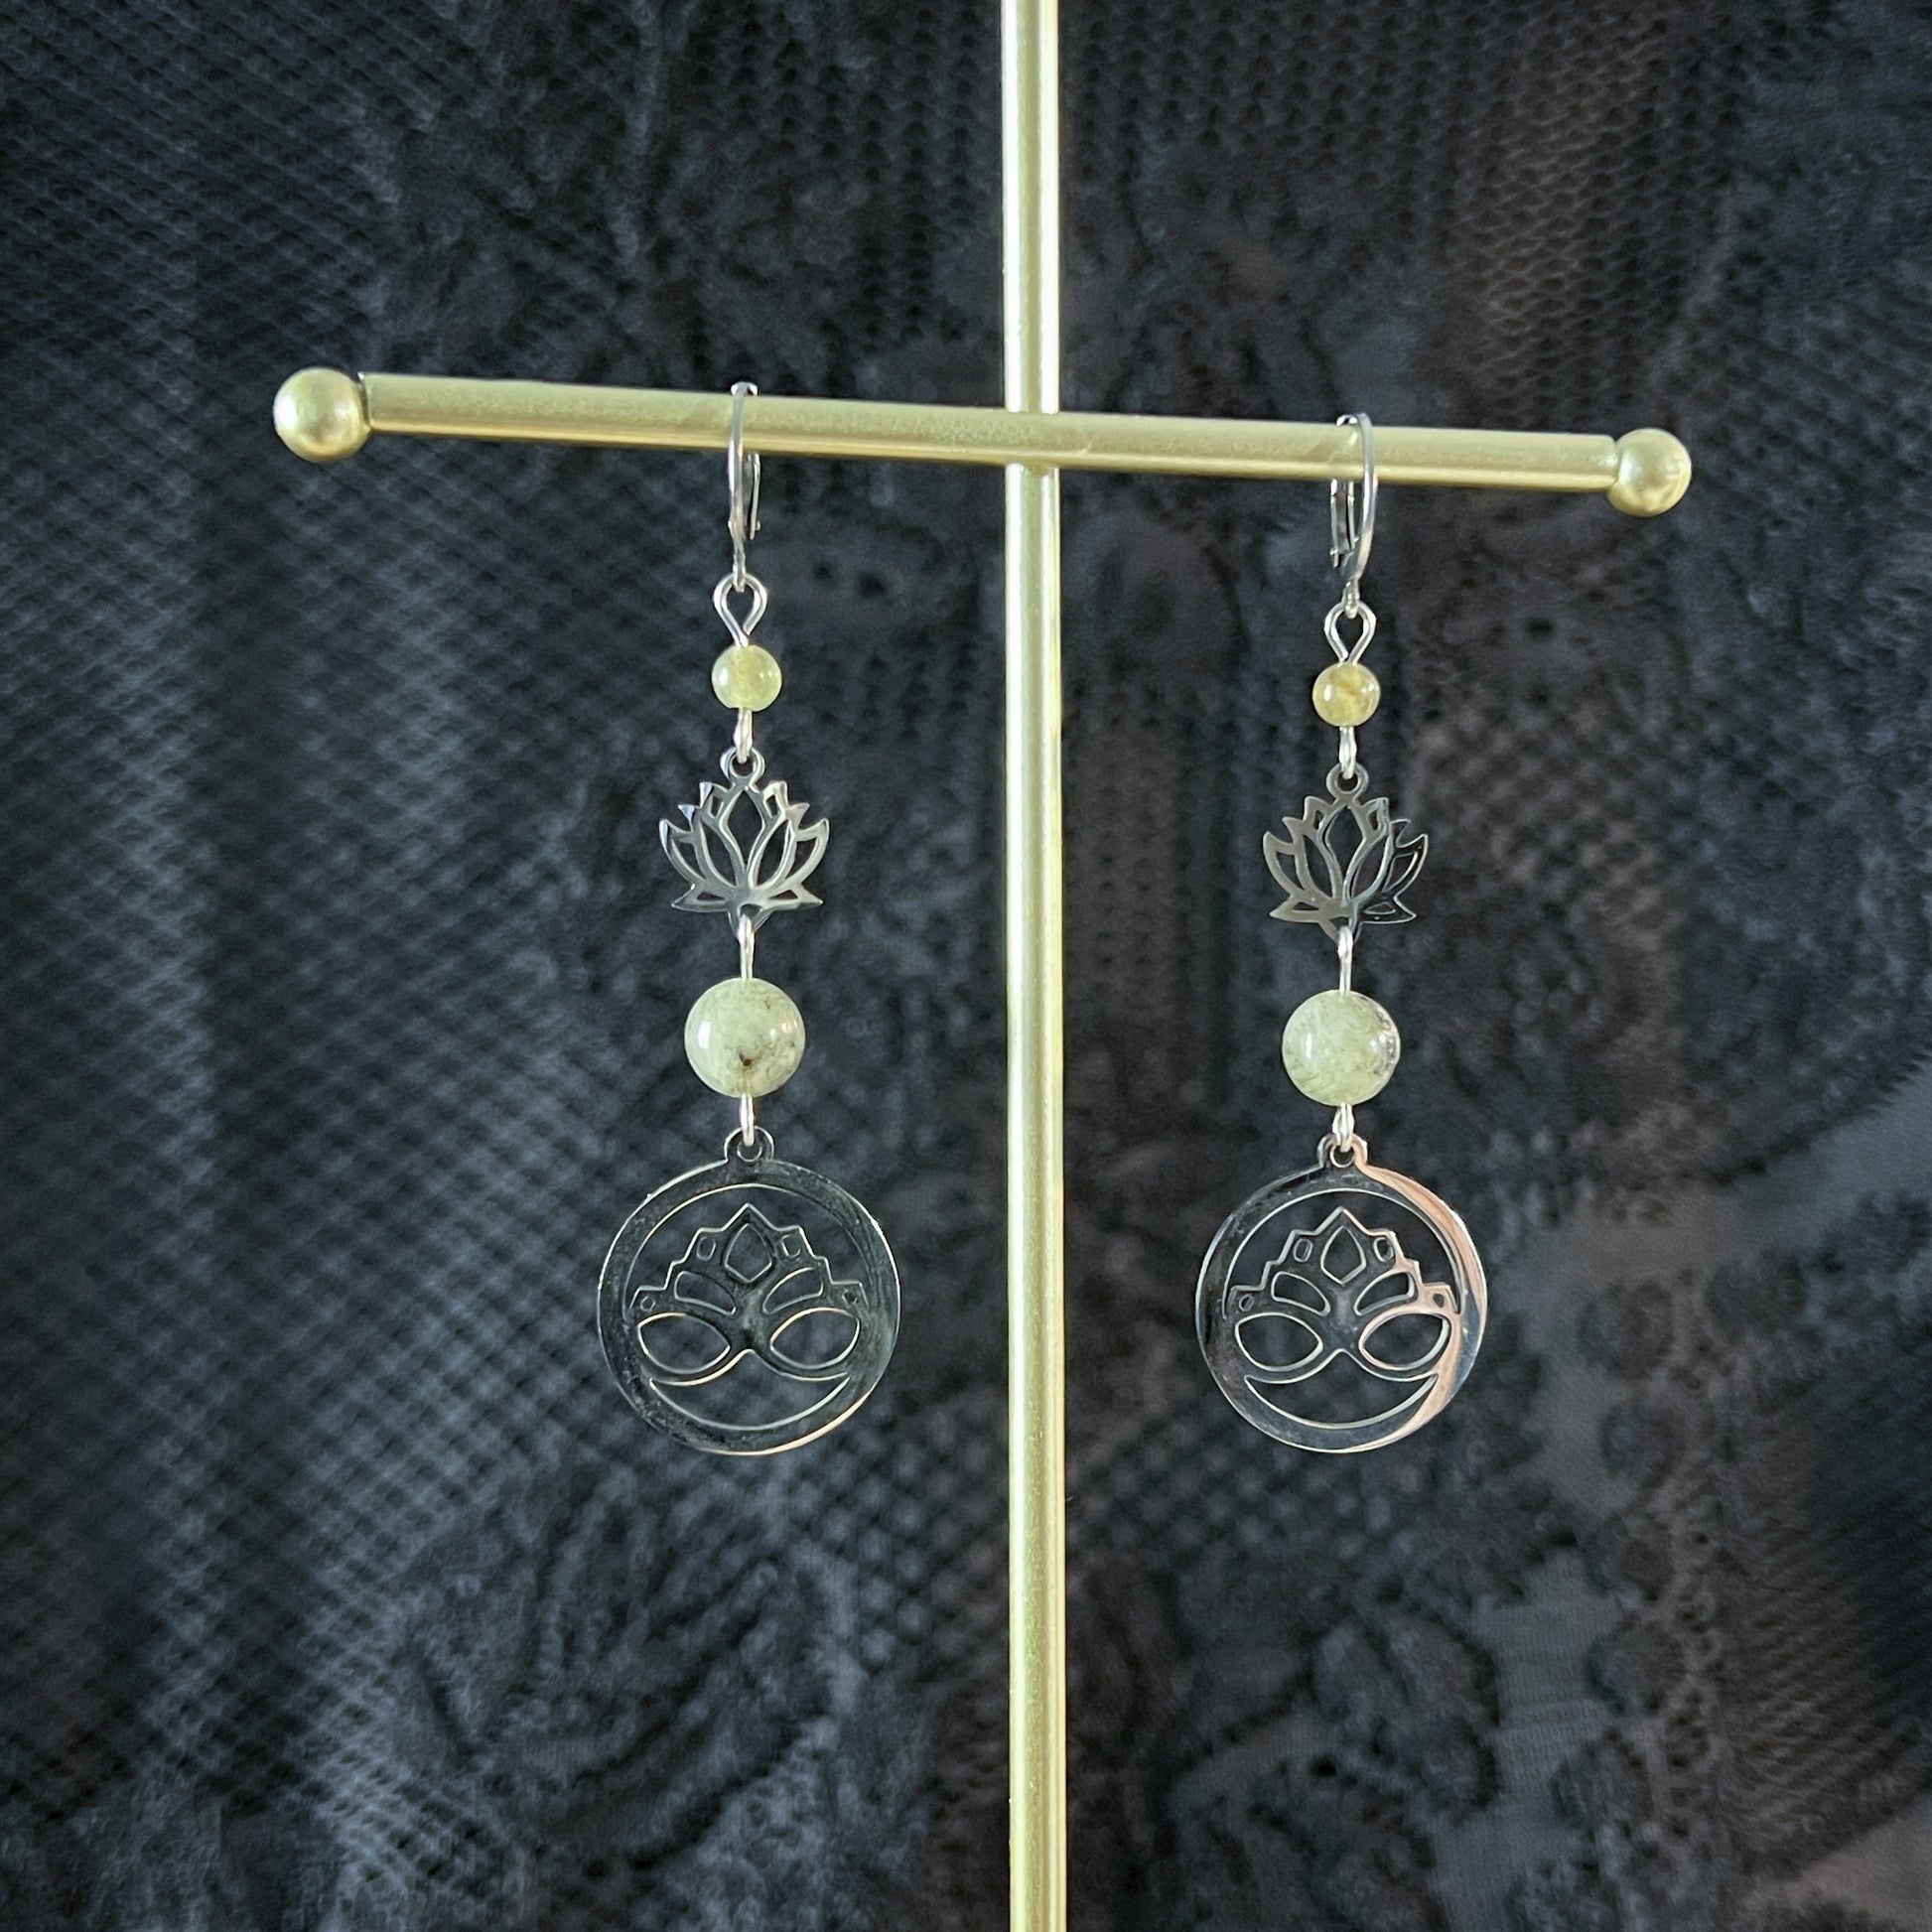 Stainless steel lotus flower and labradorite crystal earrings spiritual earrings gift for her boho earrings